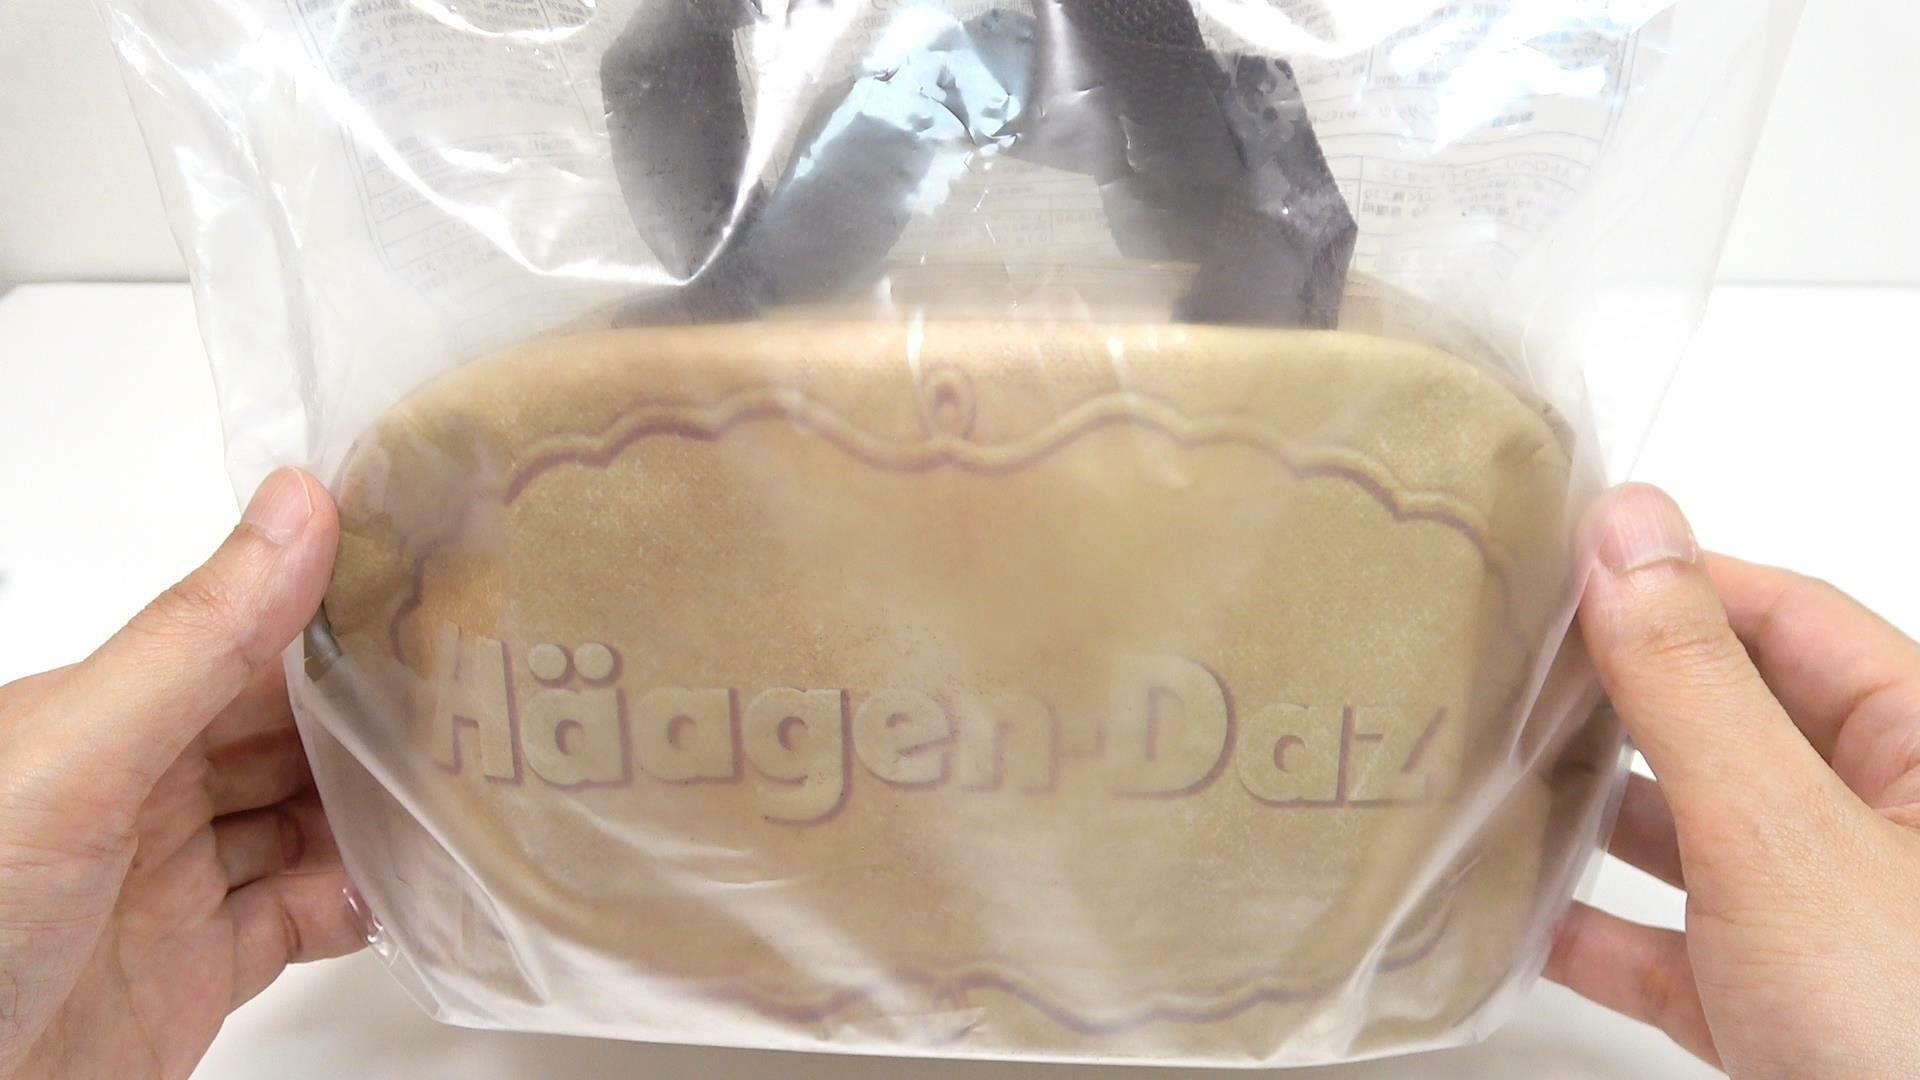 クリスピーサンド型の保冷バッグがたまらないハーゲンダッツの福袋